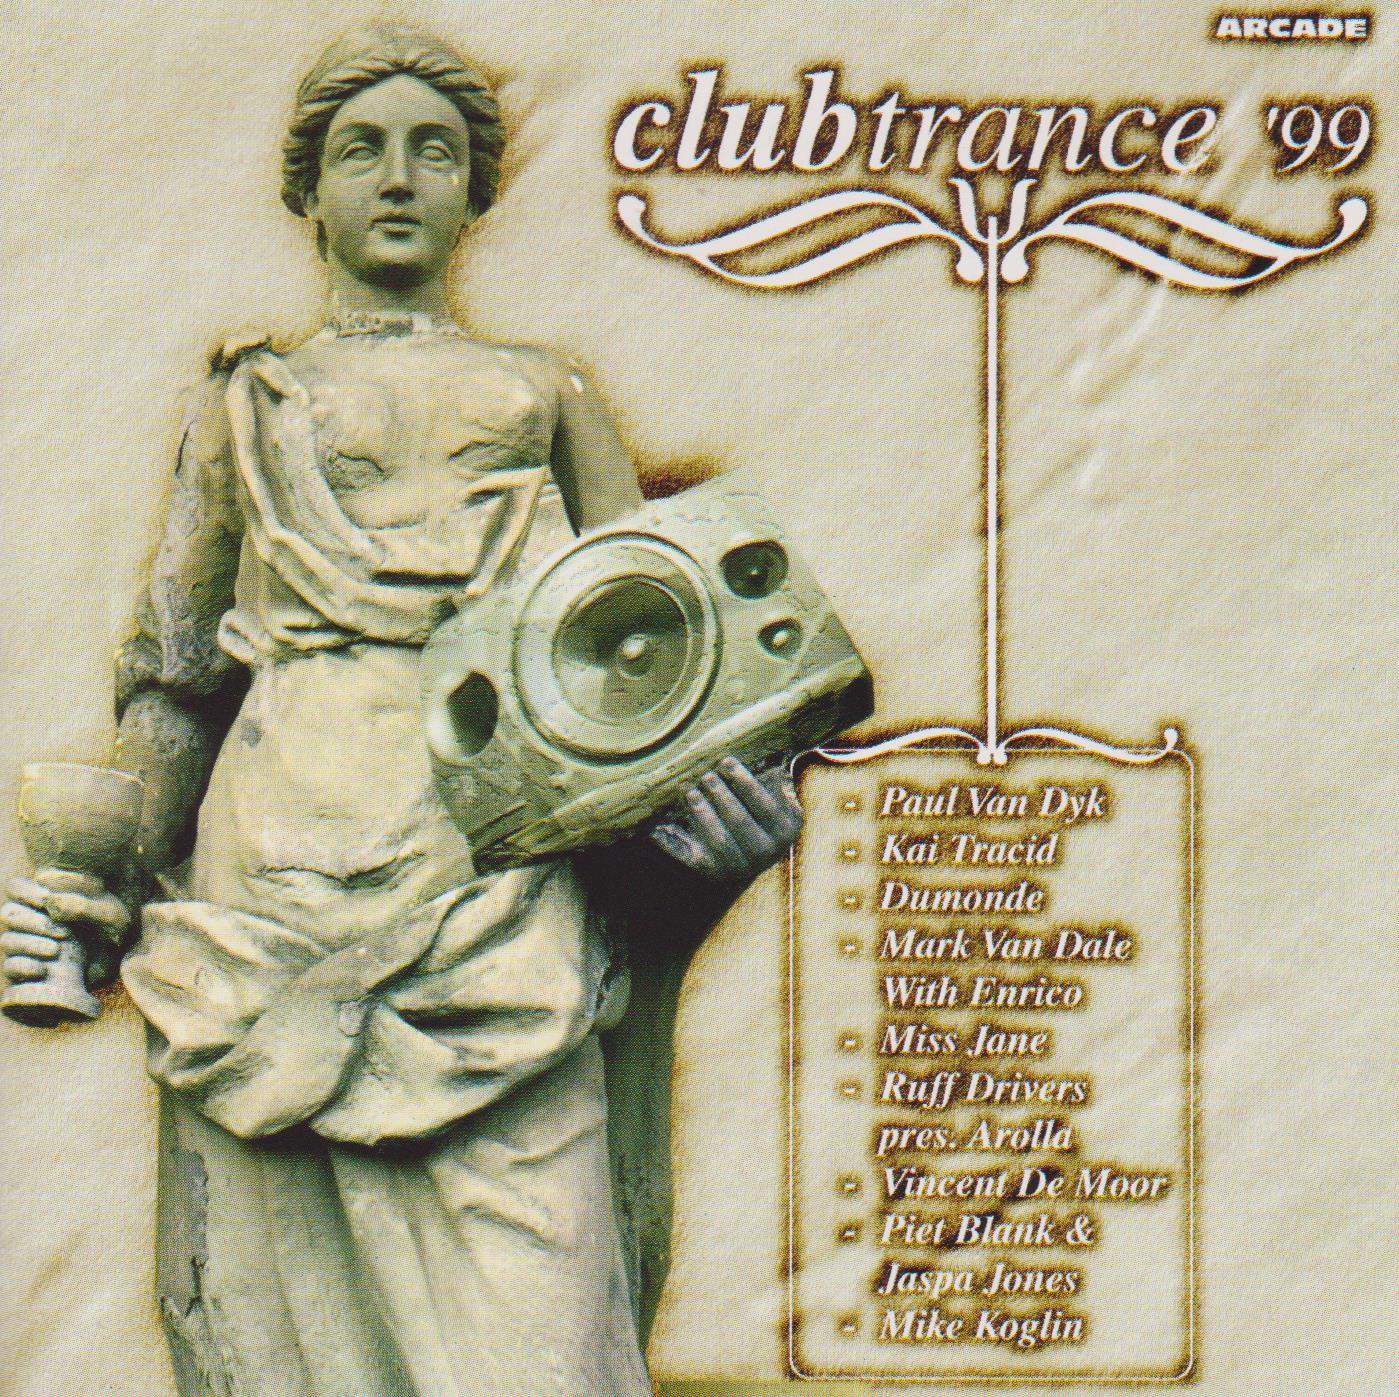 Club Trance '99 (Arcade-1999)